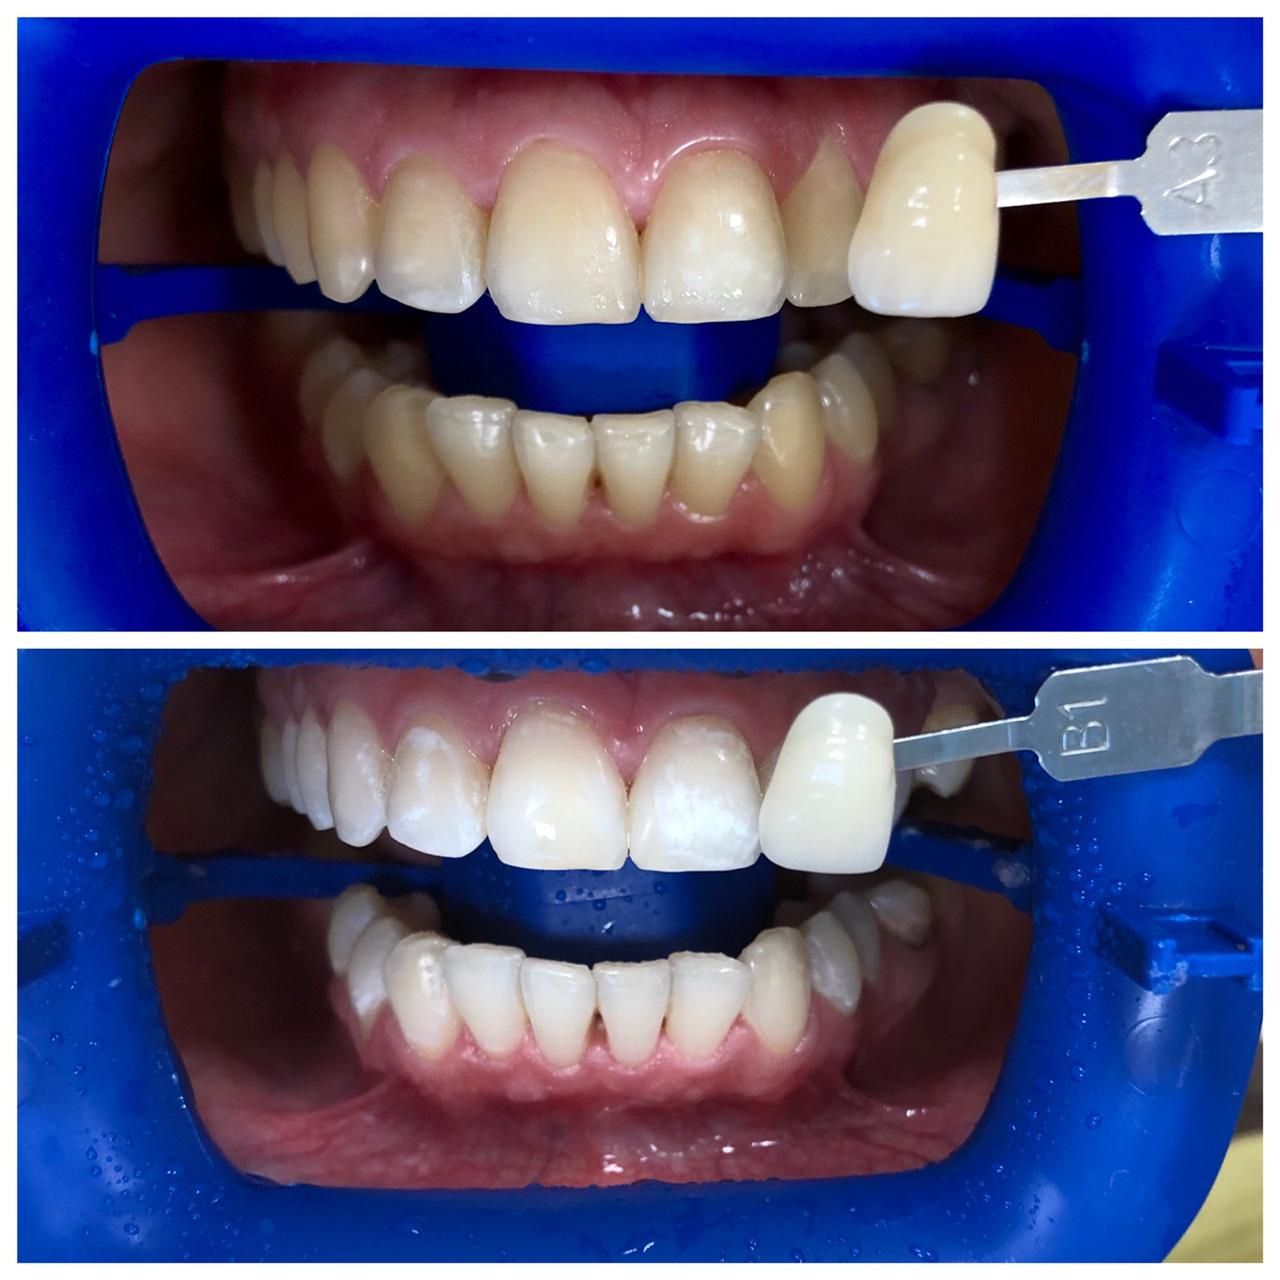 Отбеливание зубов до и после